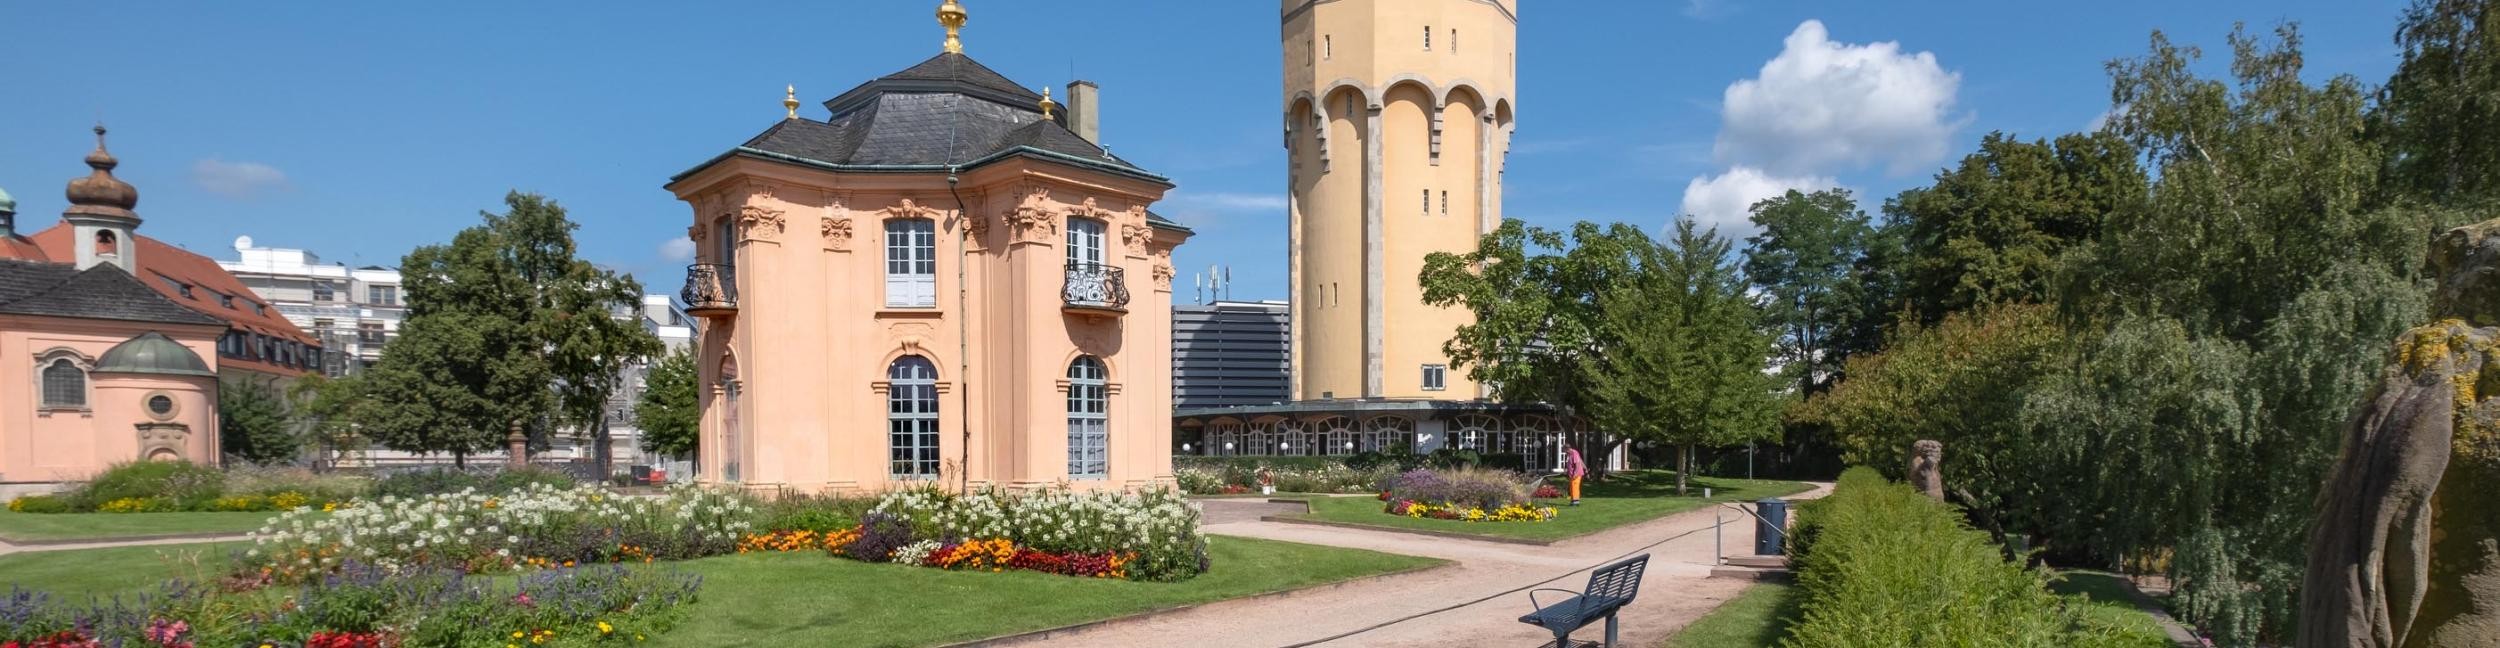 Pagodenburg mit Wasserturm im Hintergrund in Rastatt